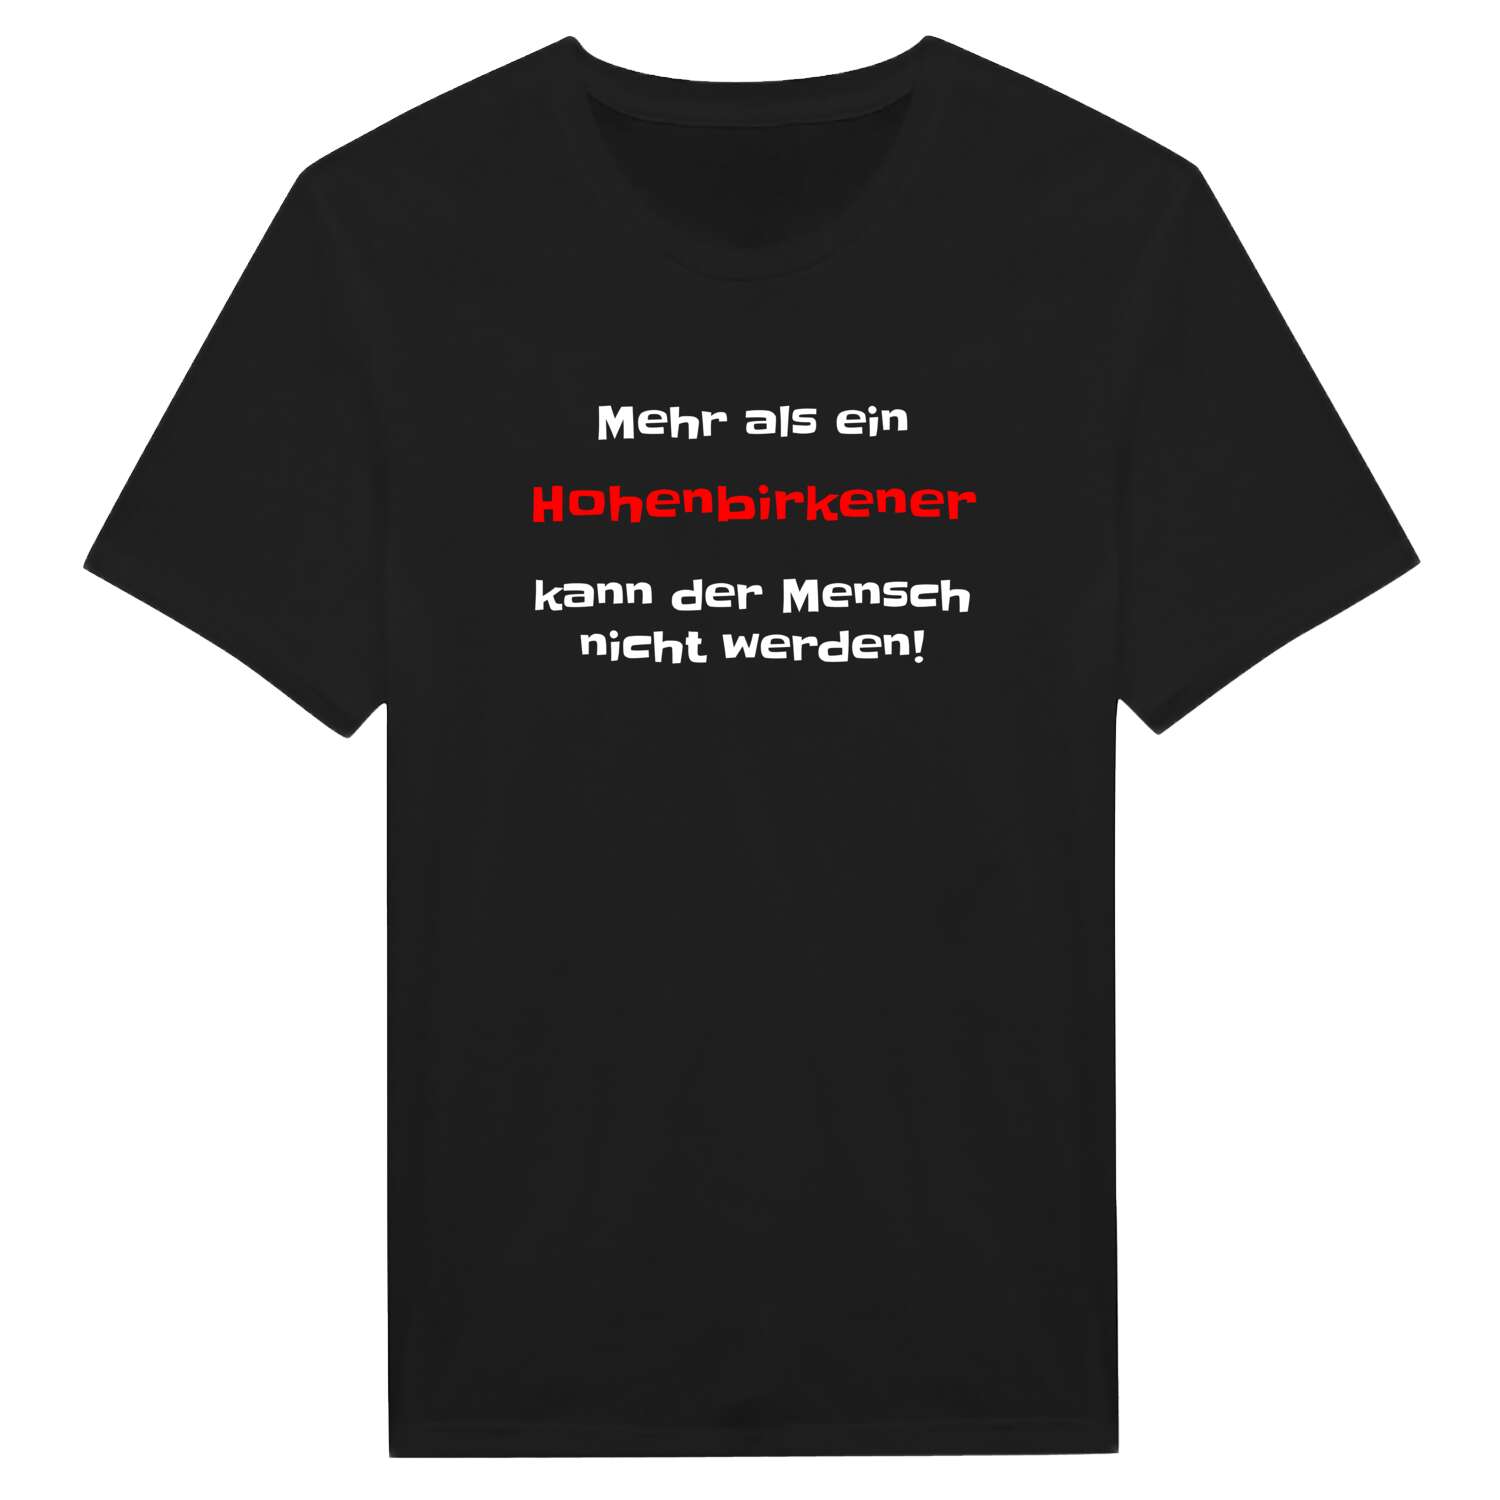 Hohenbirken T-Shirt »Mehr als ein«